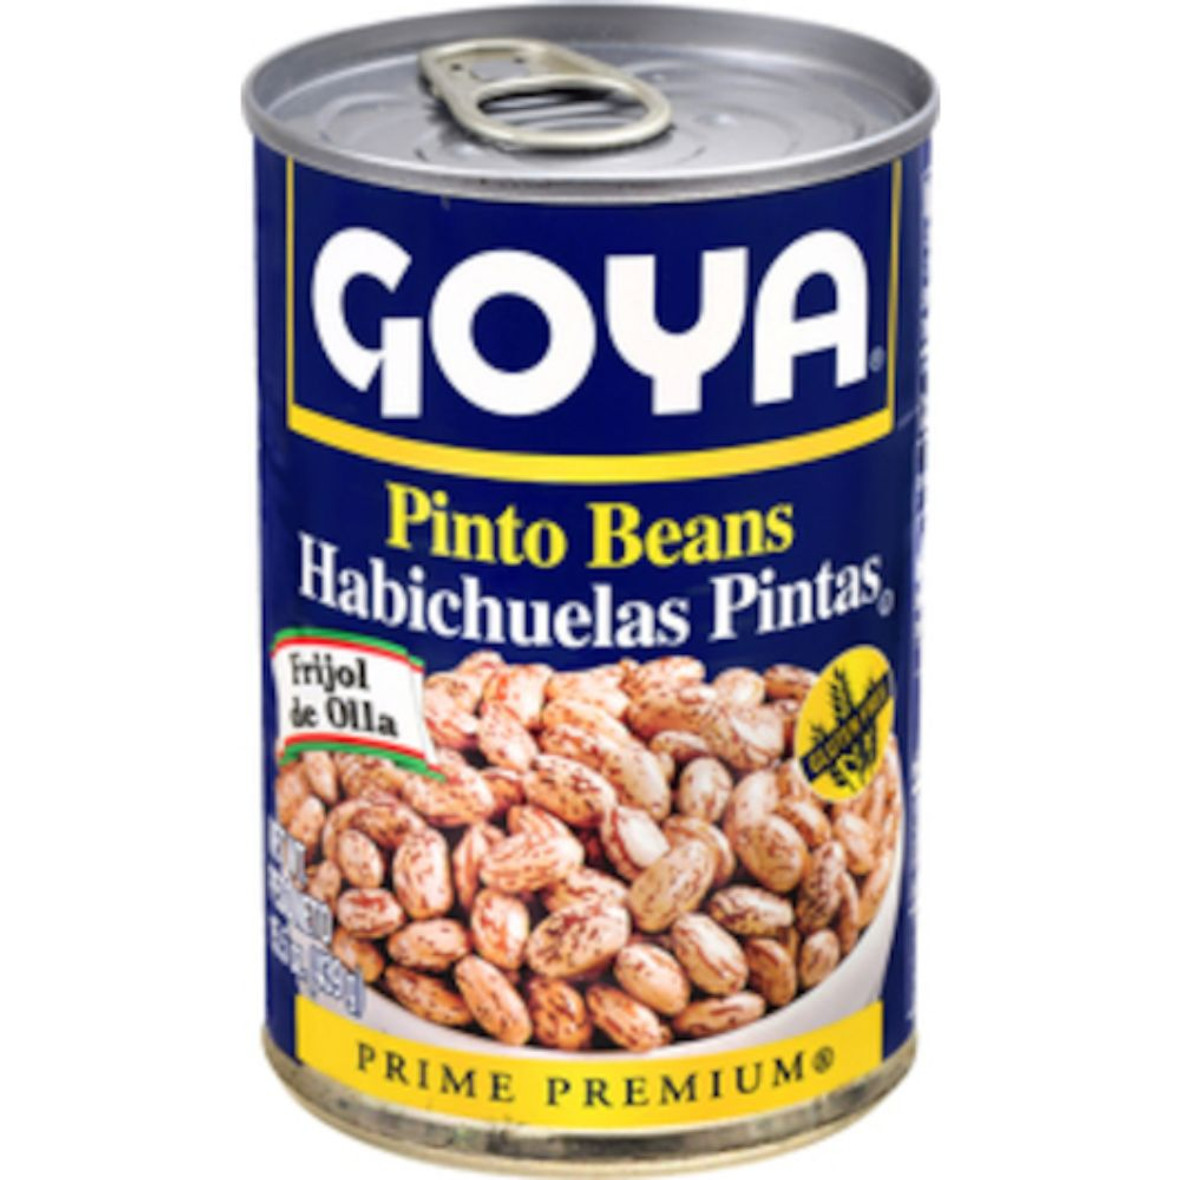 Goya Pinto Beans, 15.5 Ounce